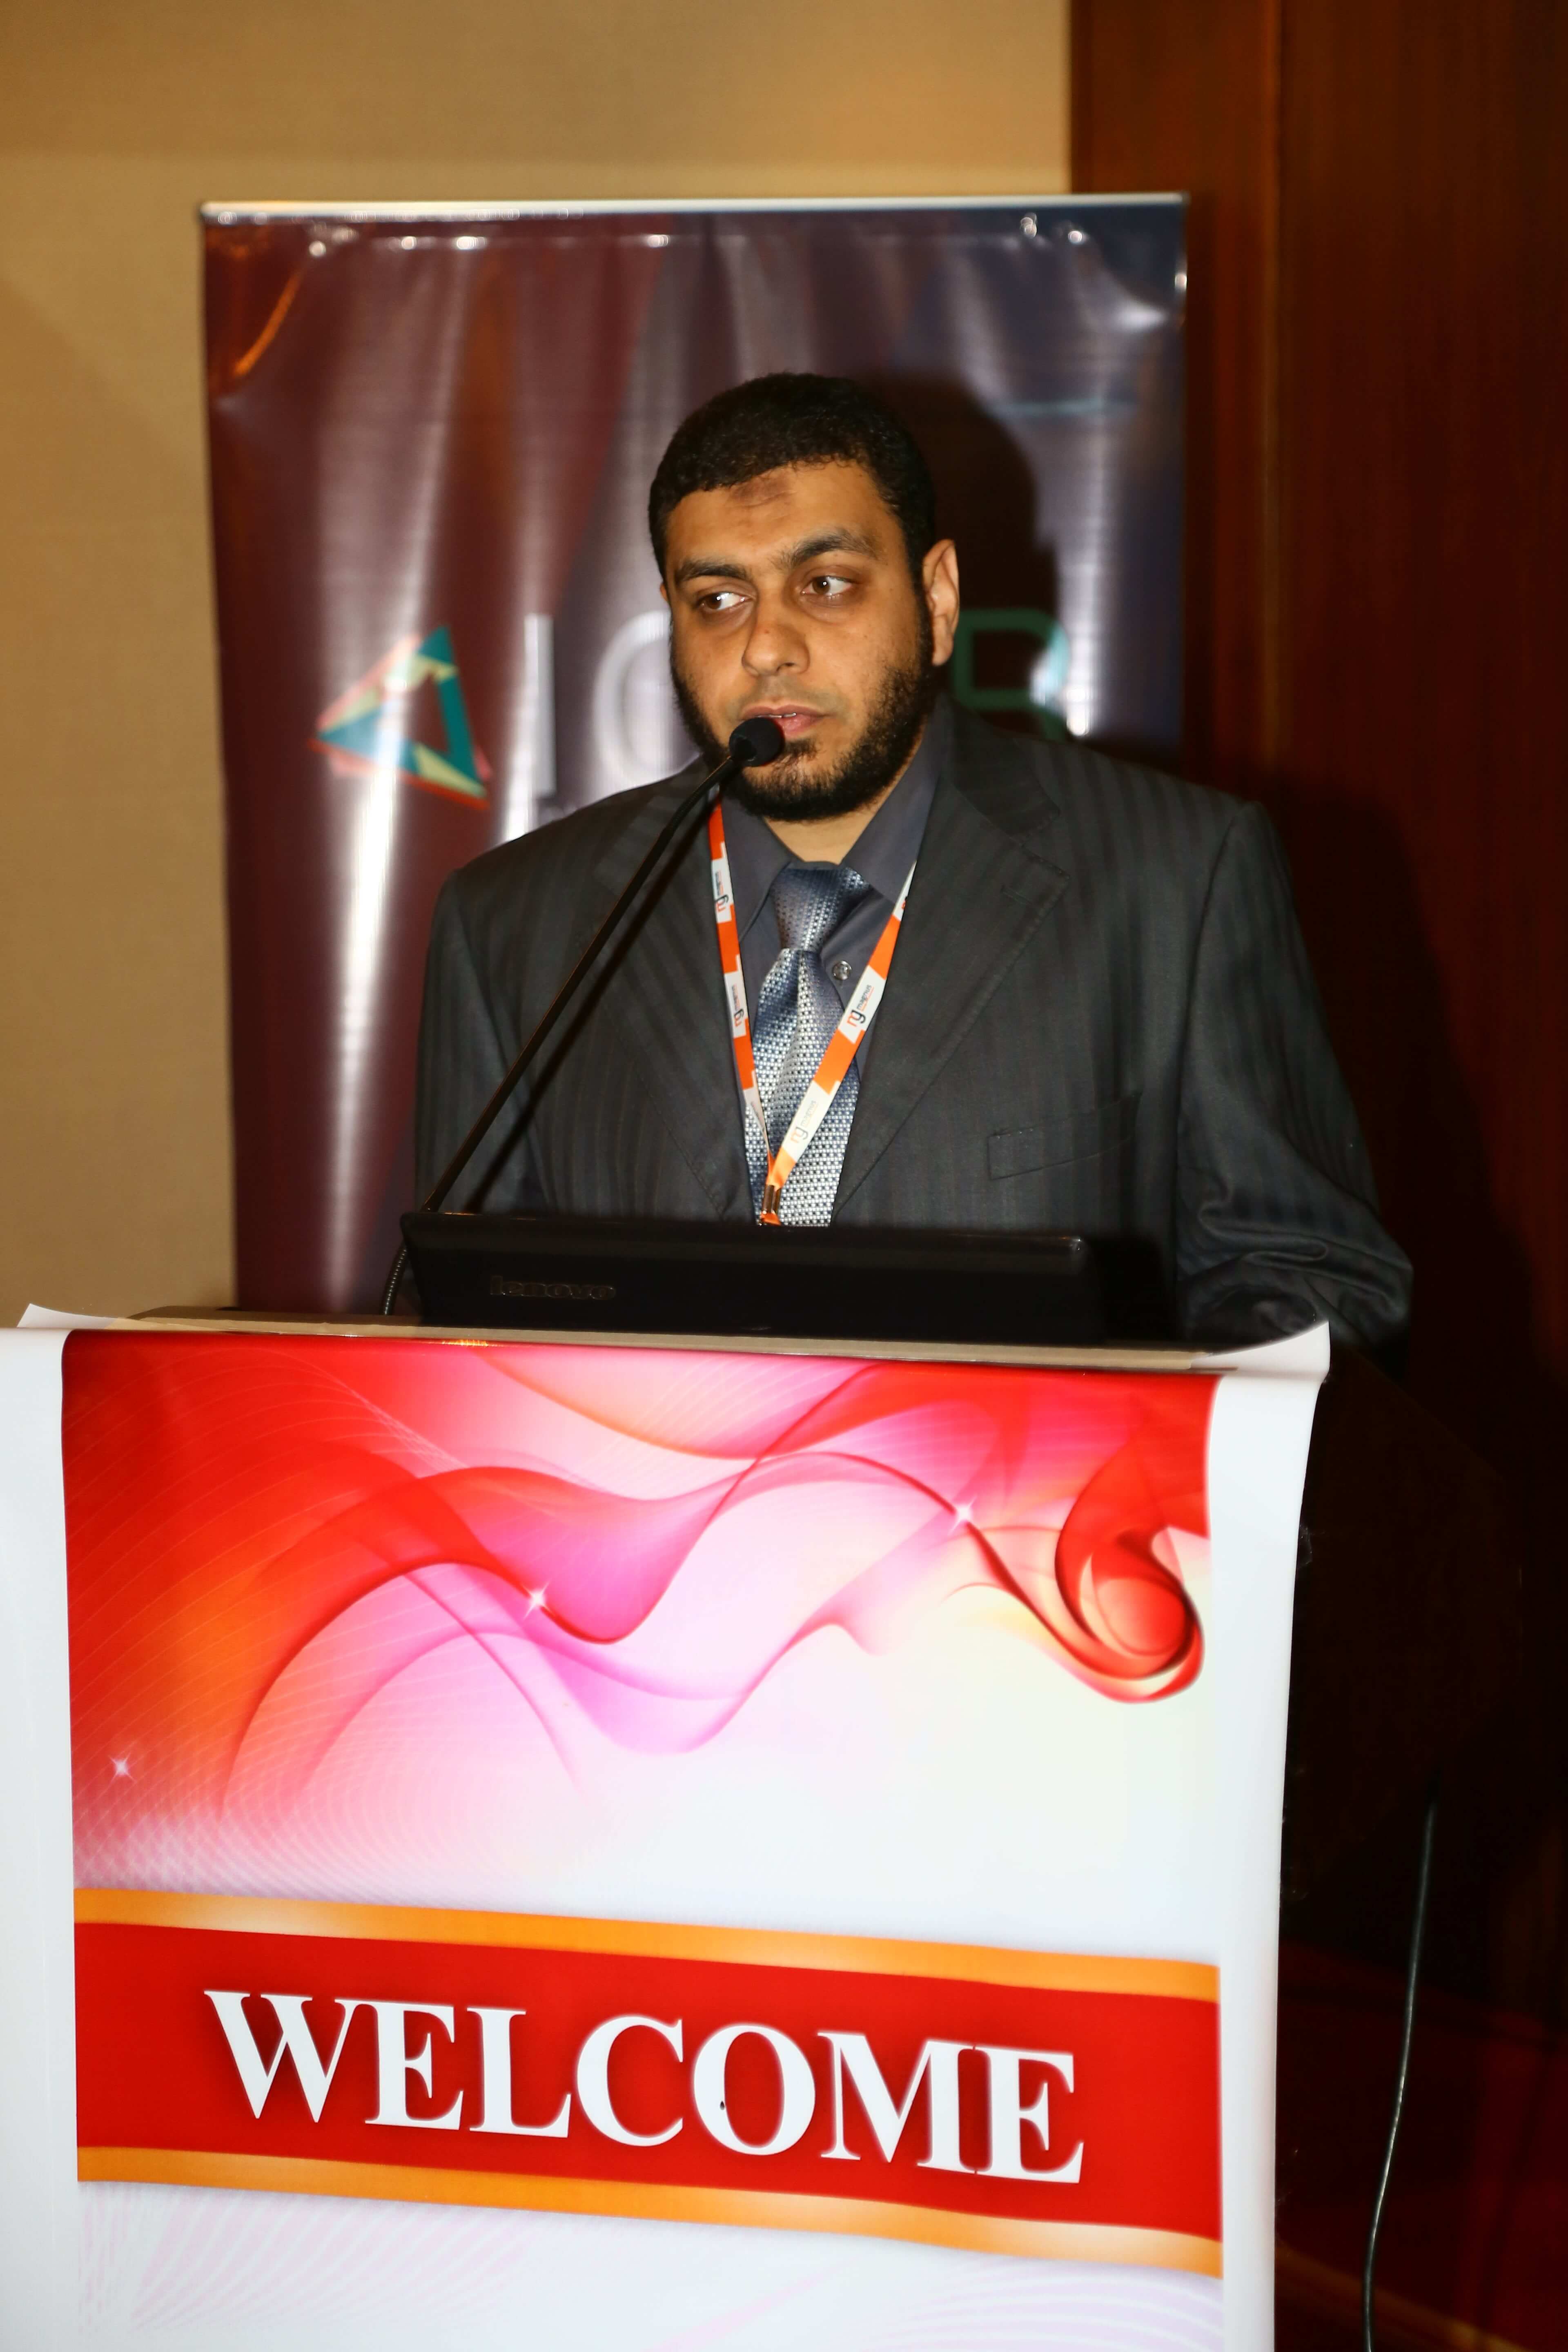 Cancer research conferences - Dr. Mahmoud Rezk